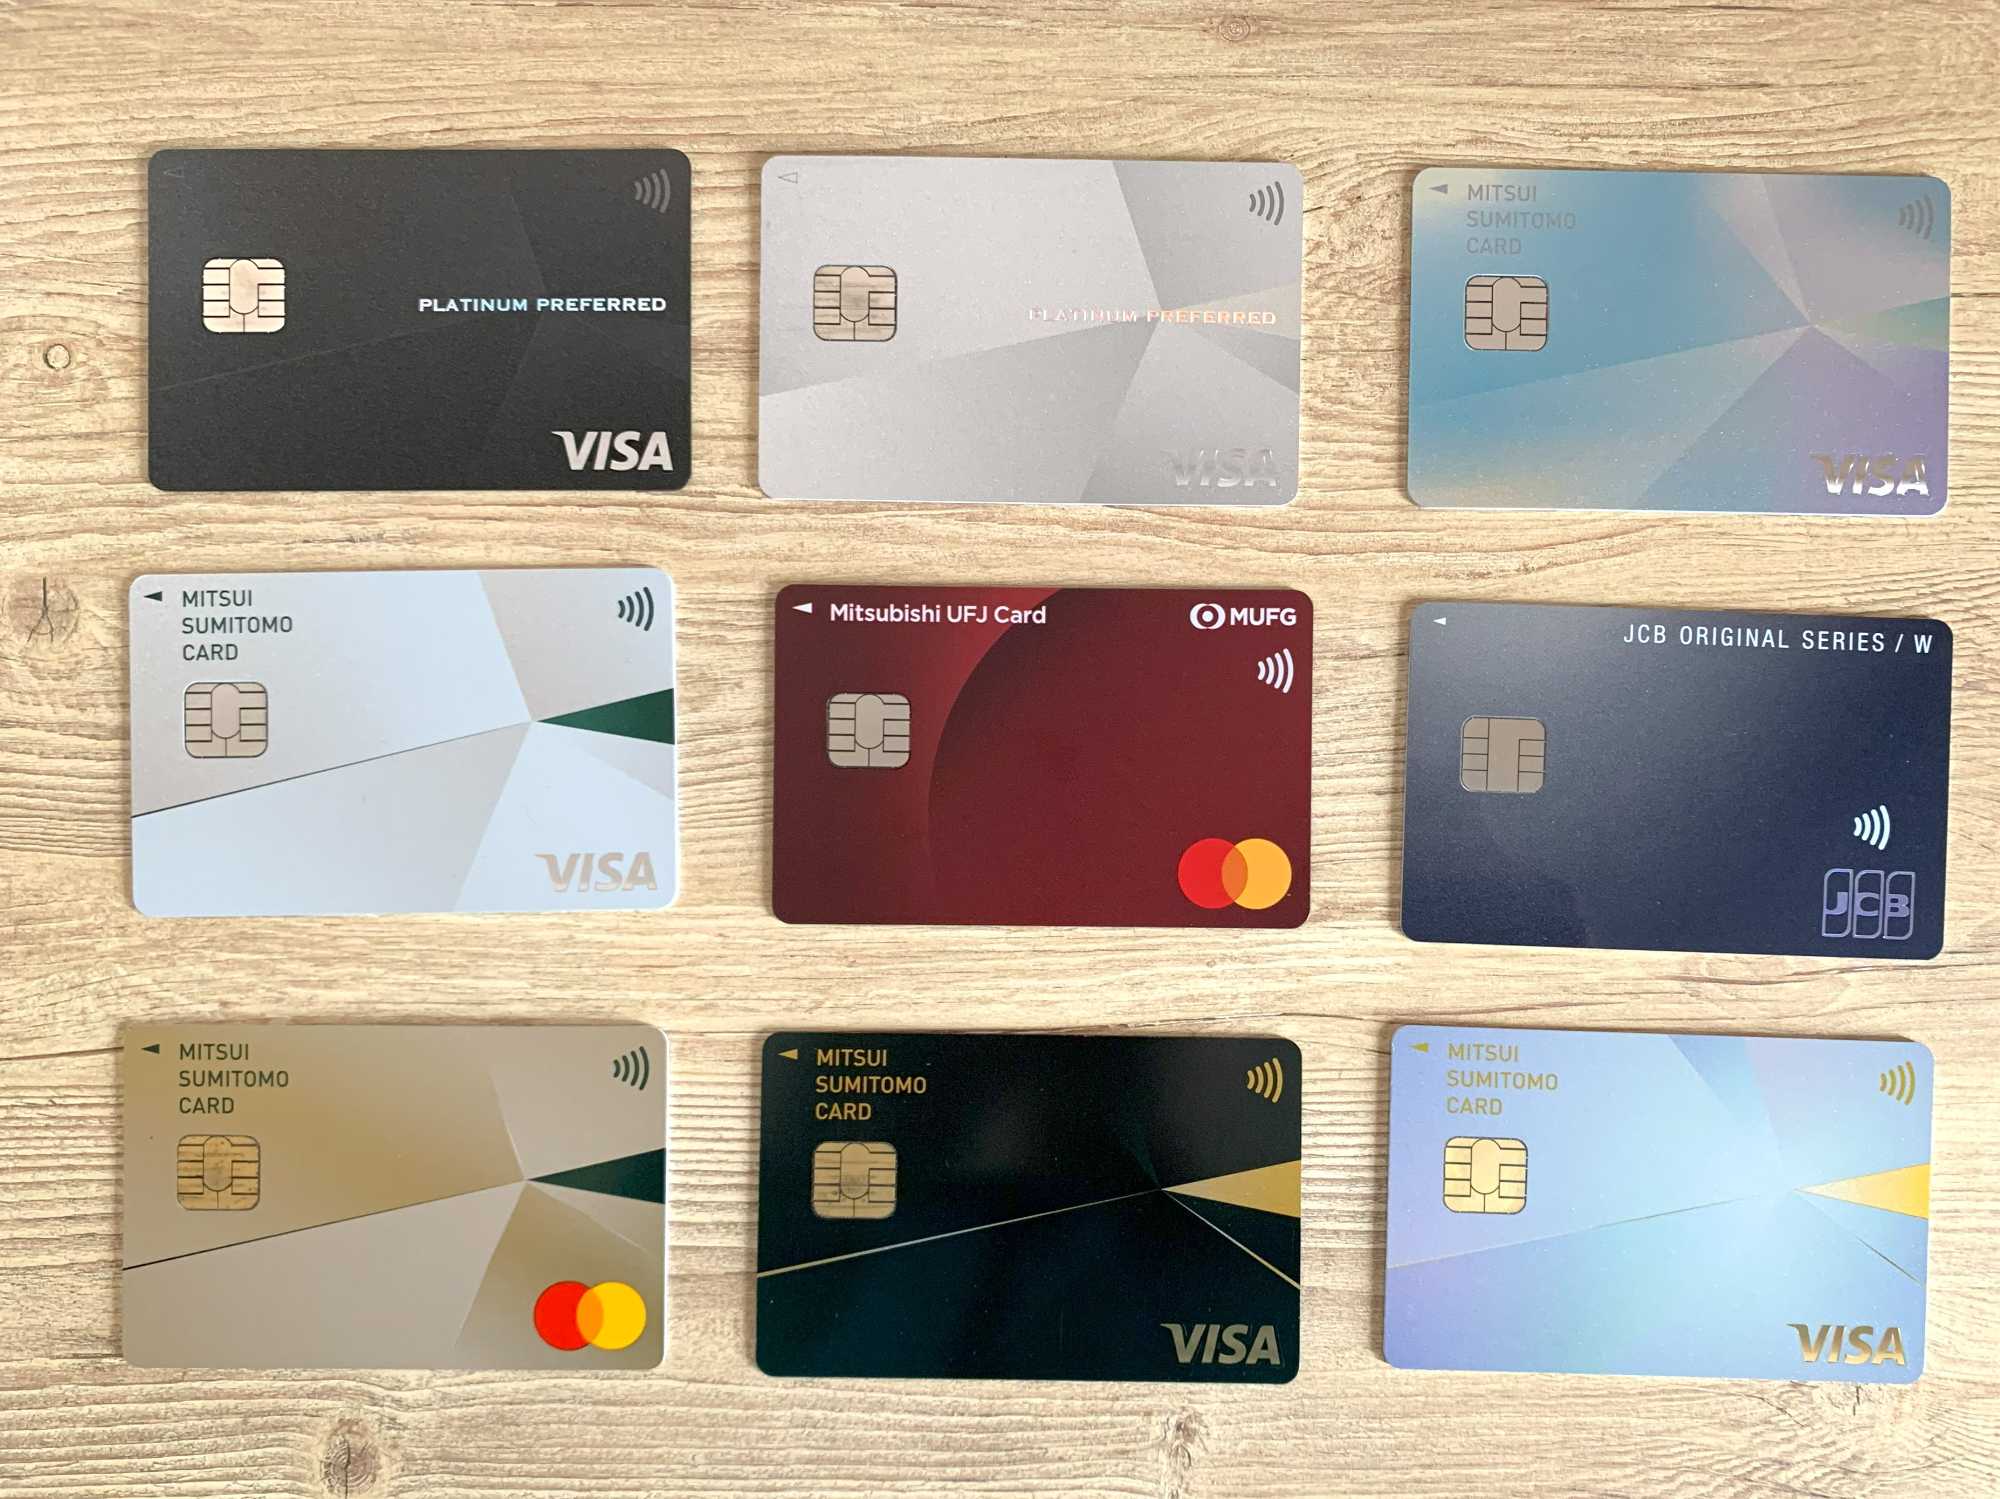 三井住友カード（NL）、三井住友カード ゴールド（NL）、三井住友カード プラチナプリファード、三菱UFJカード、JCBカードWの実物と券面デザインを並べて比較。